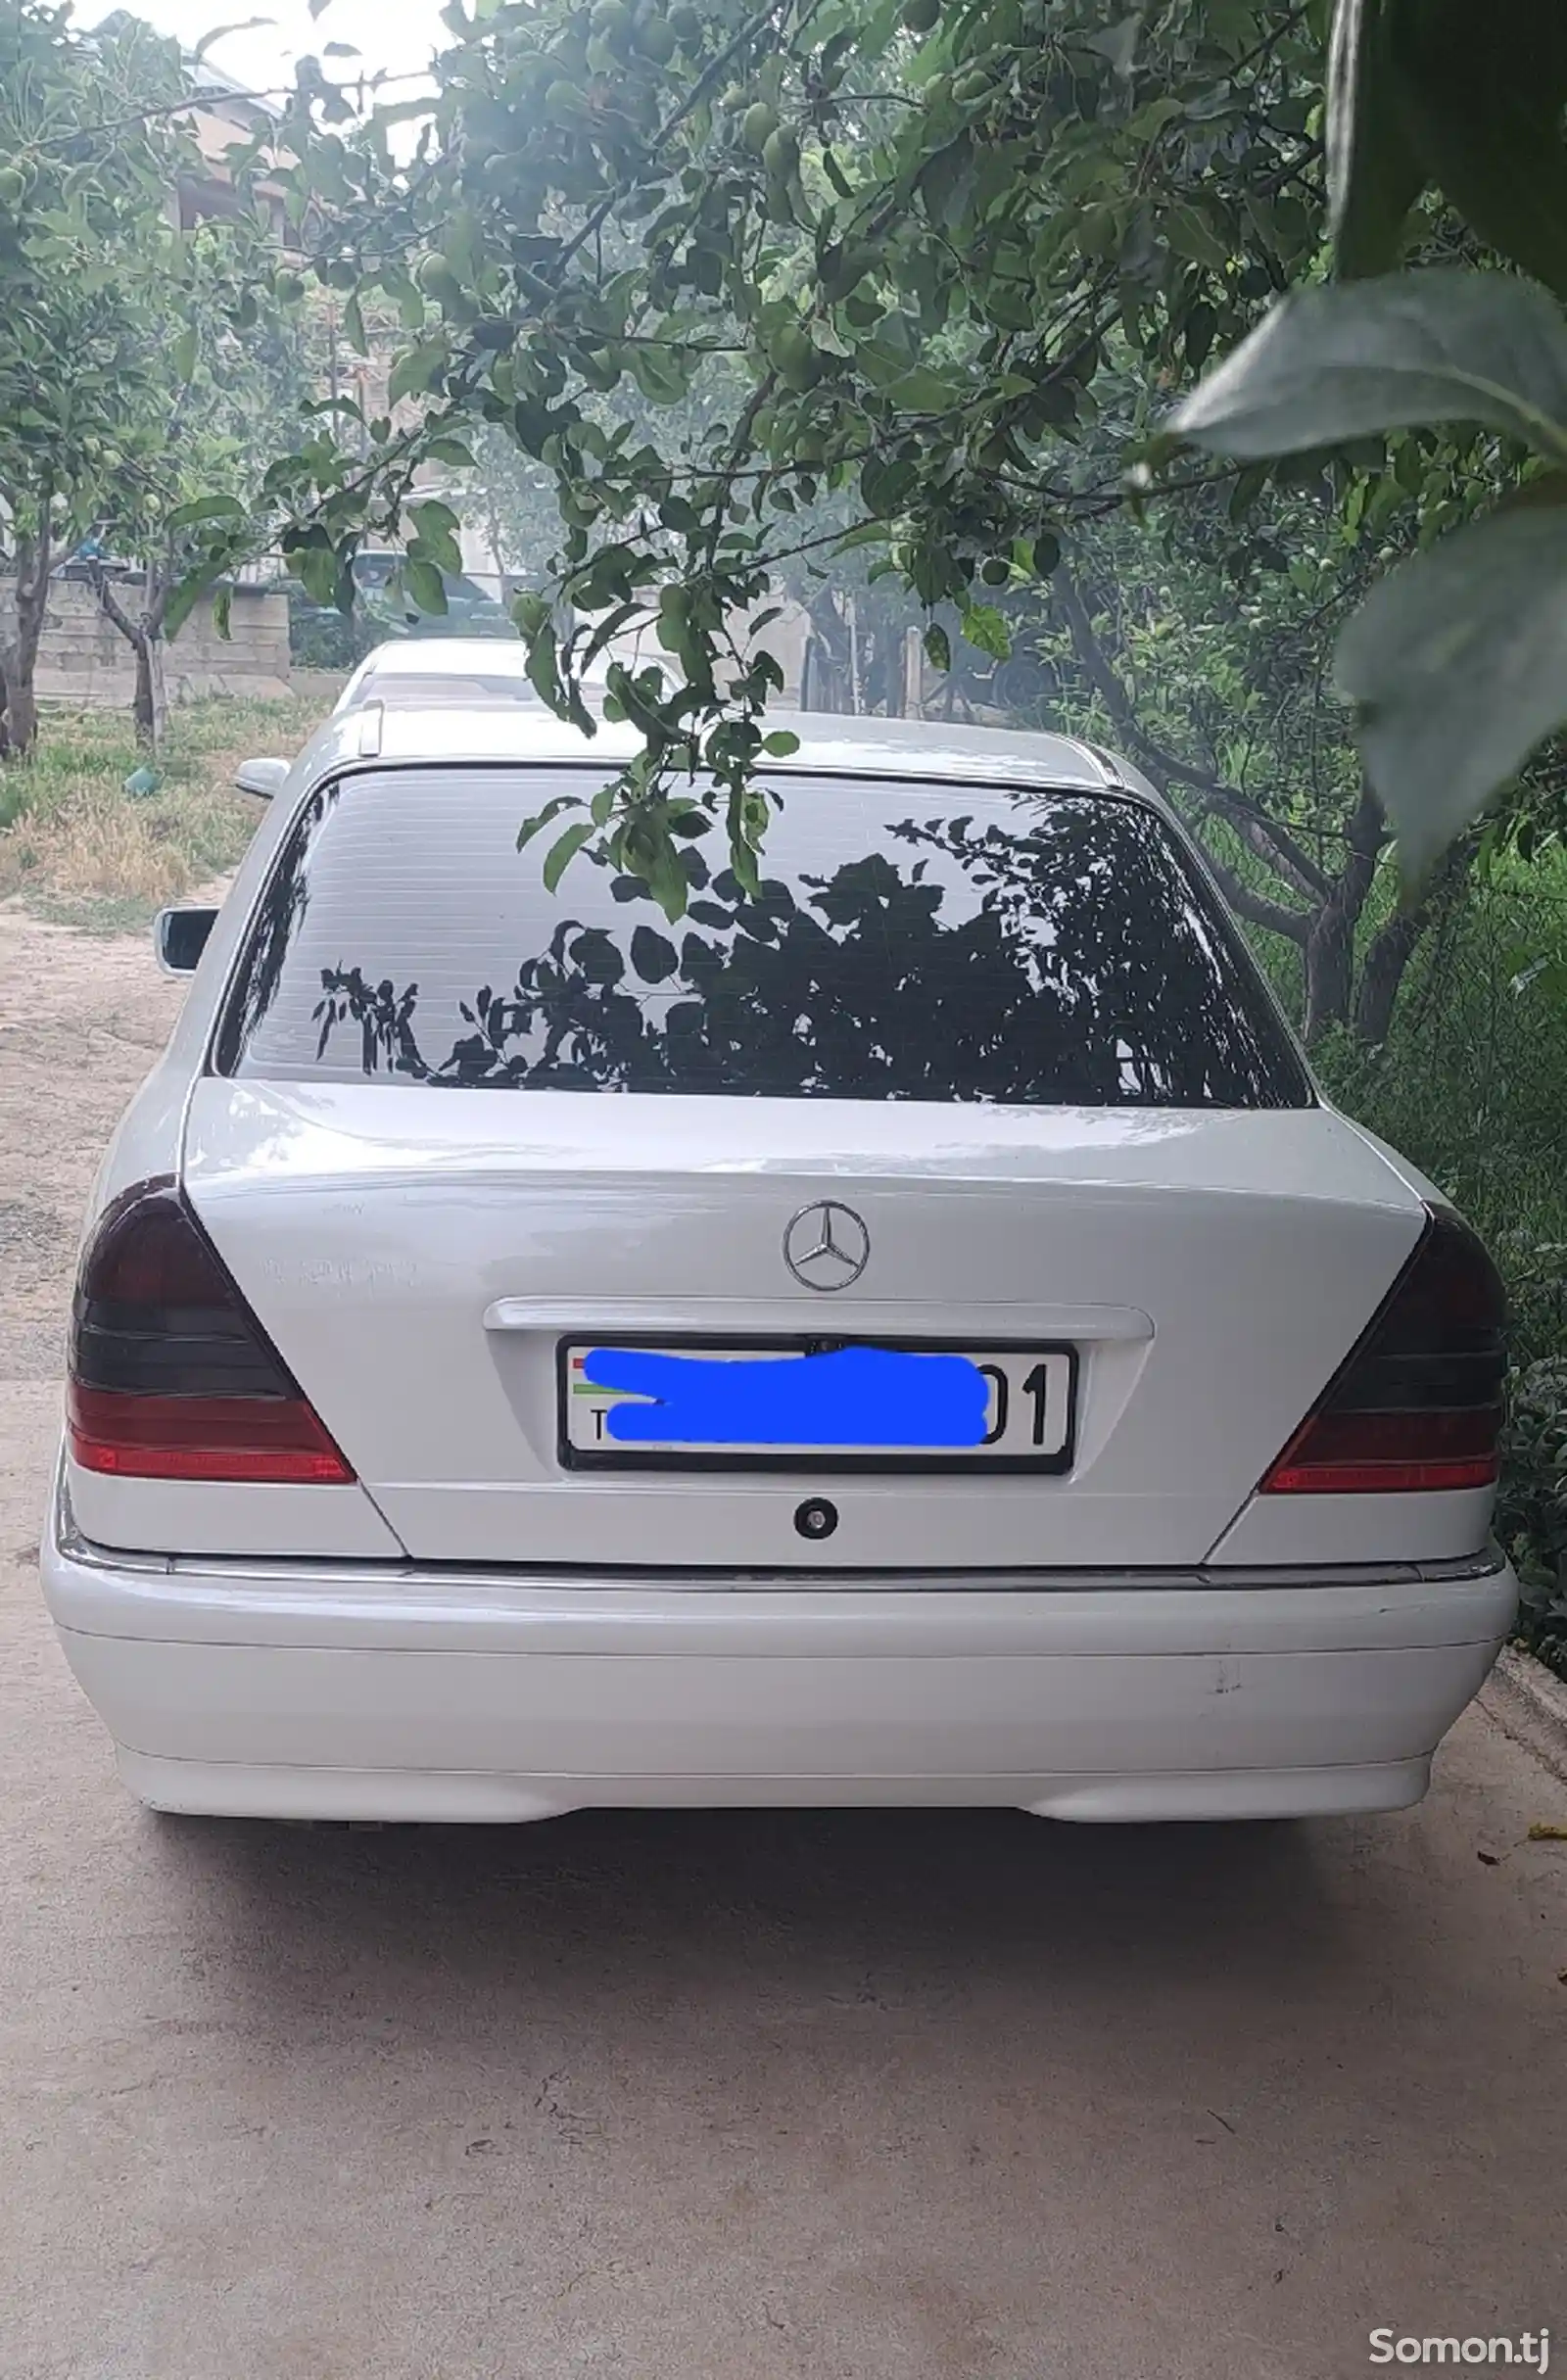 Mercedes-Benz A class, 2000-2